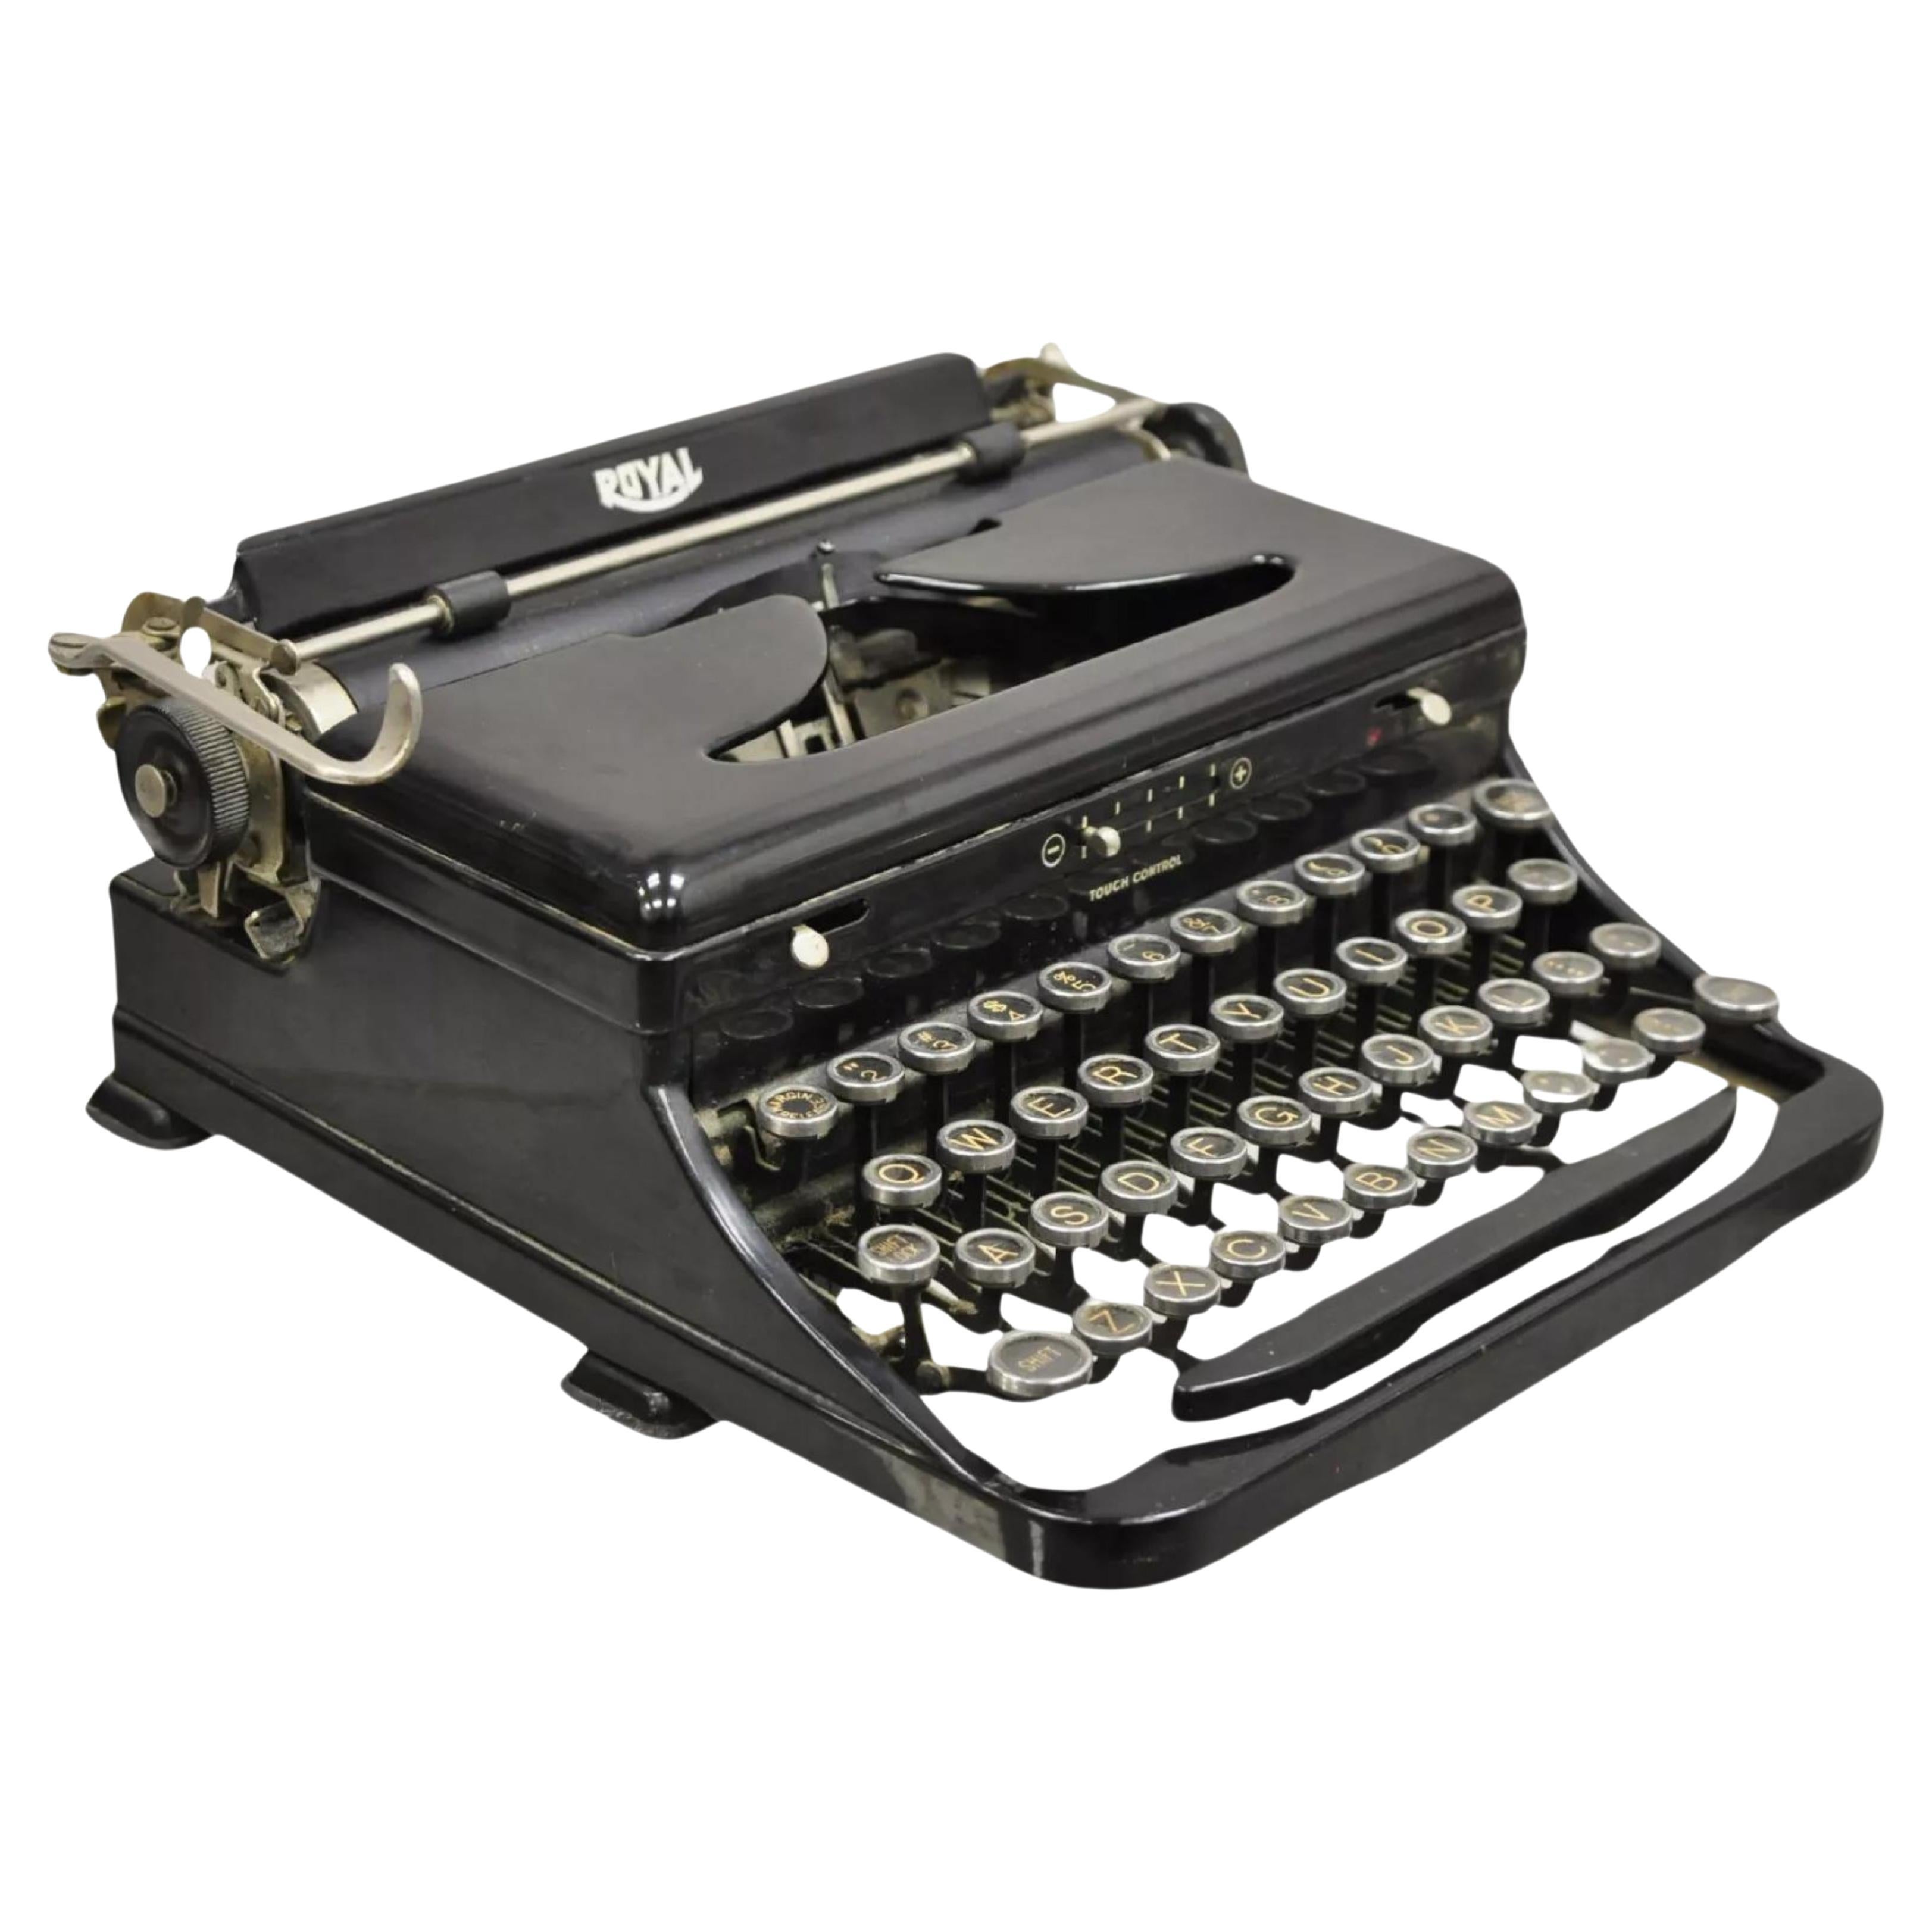 Antique Royal Model O Vintage Art Déco Black Portable Typewriter 1938